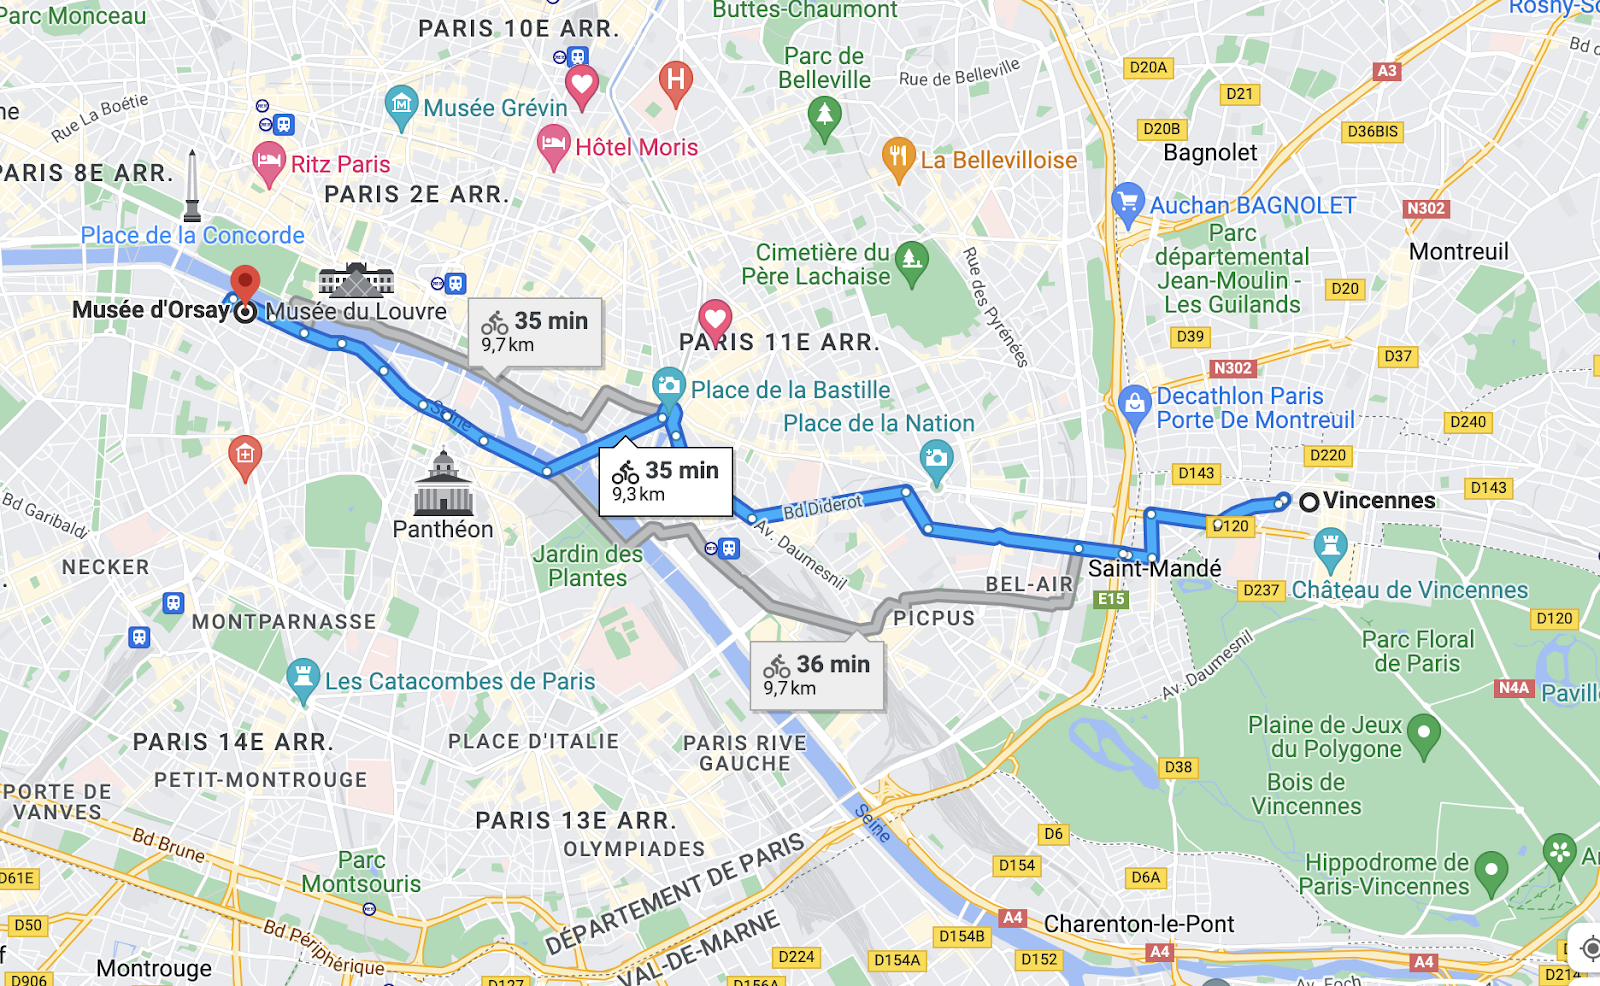 capture d’écran montrant un itinéraire dans Paris à vélo